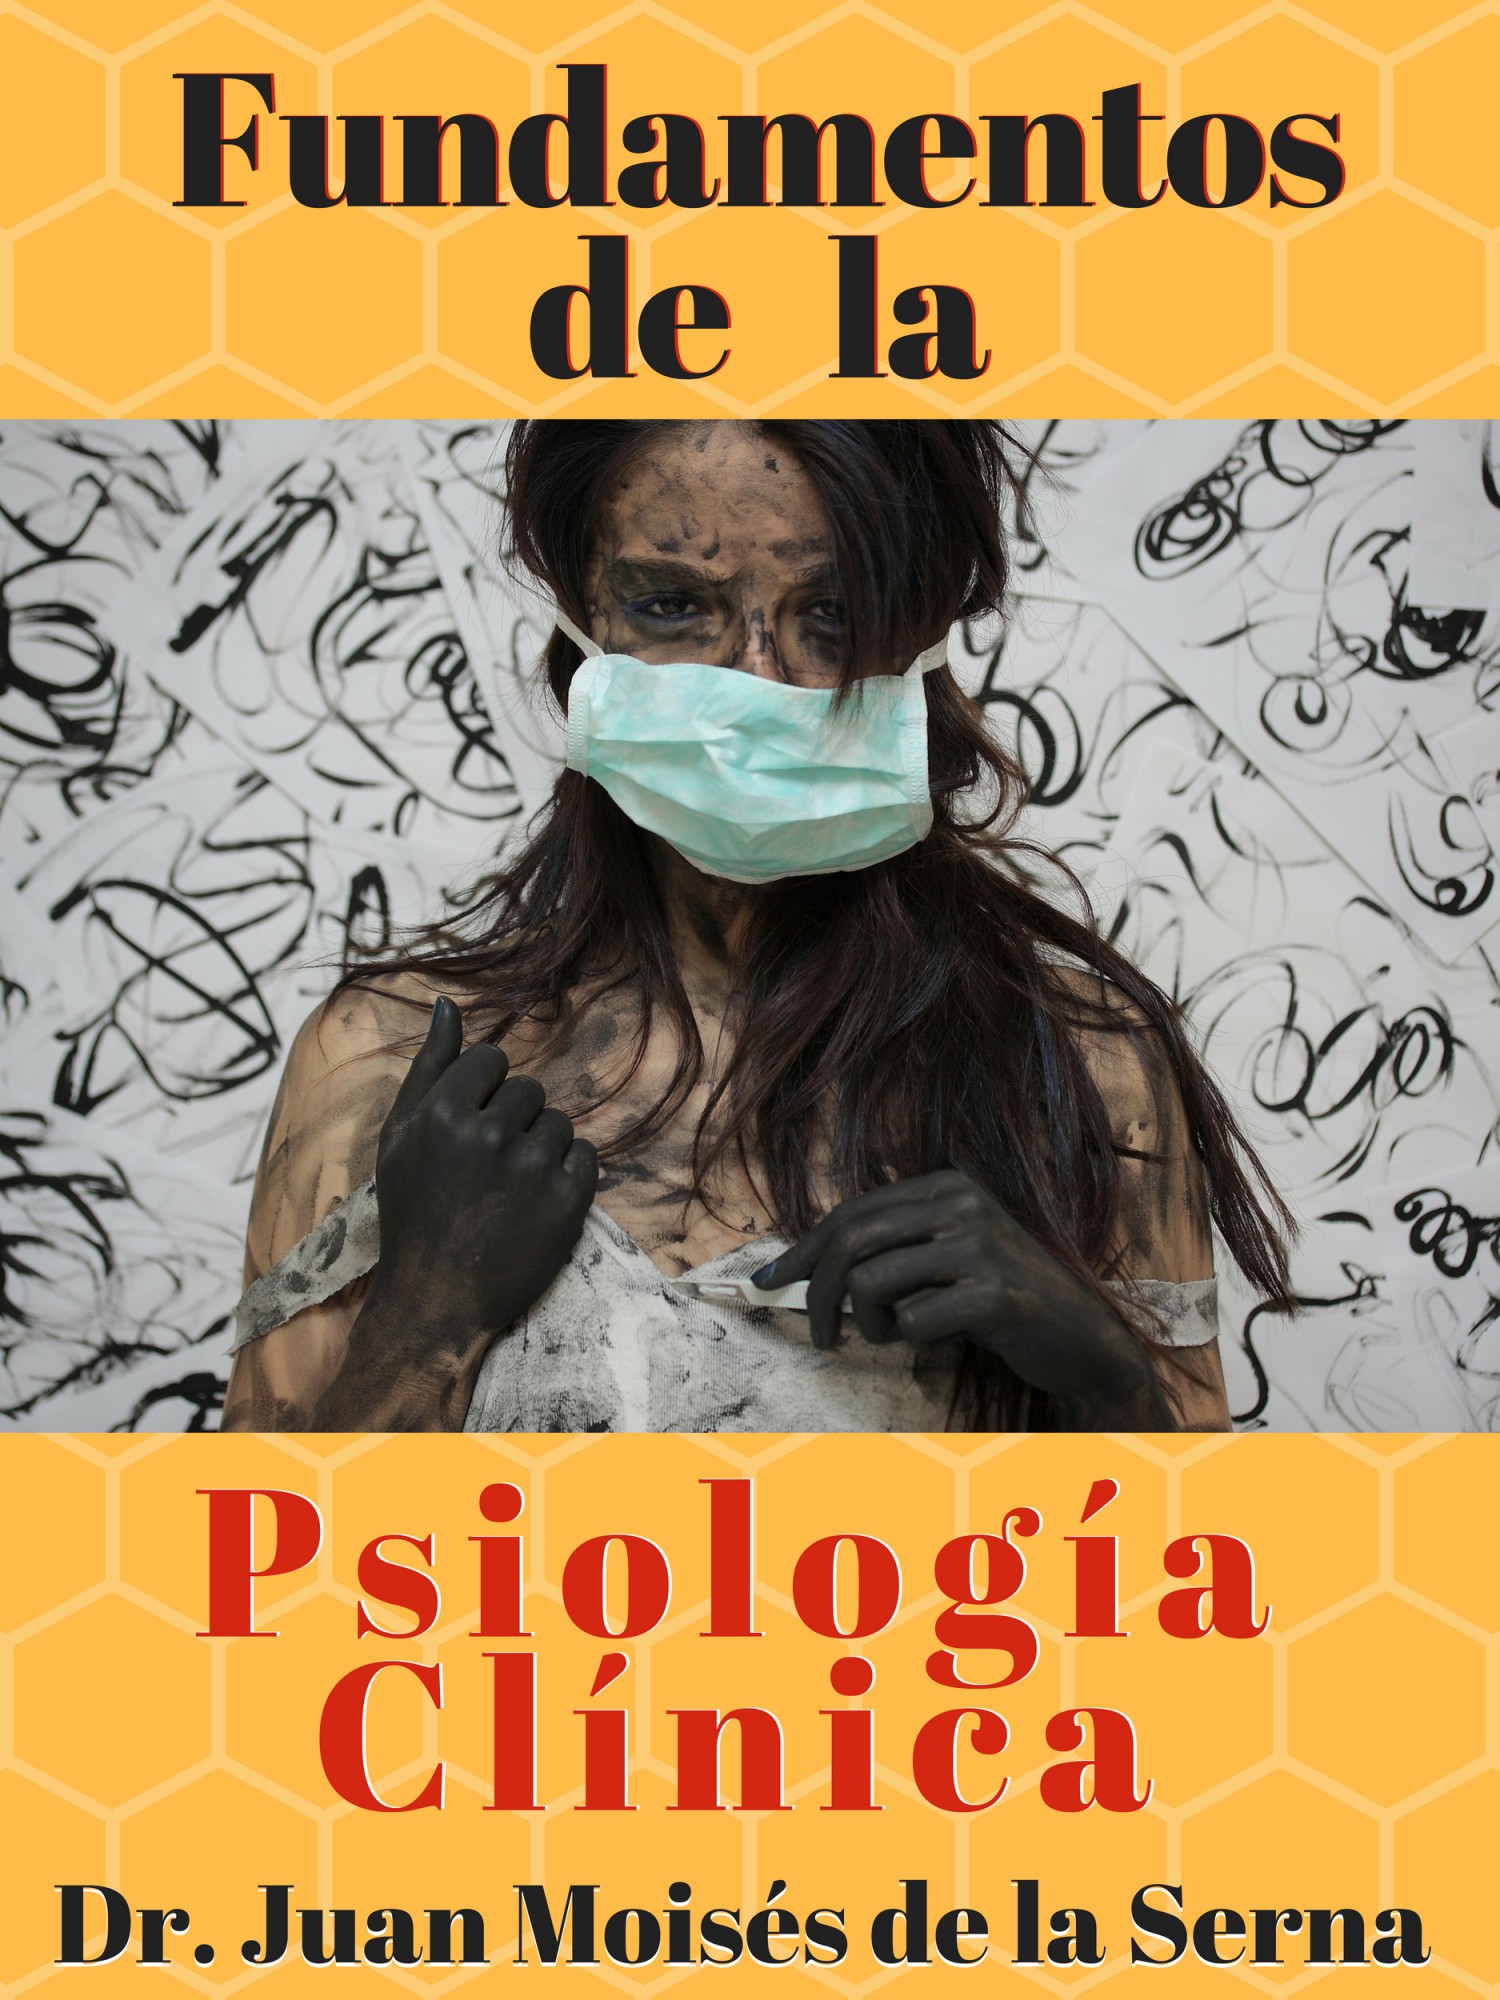 Книга Fundamentos De La Psicología Clínica из серии , созданная Juan Moisés De La Serna, может относится к жанру Общая психология, Психотерапия и консультирование. Стоимость электронной книги Fundamentos De La Psicología Clínica с идентификатором 40210359 составляет 272.27 руб.